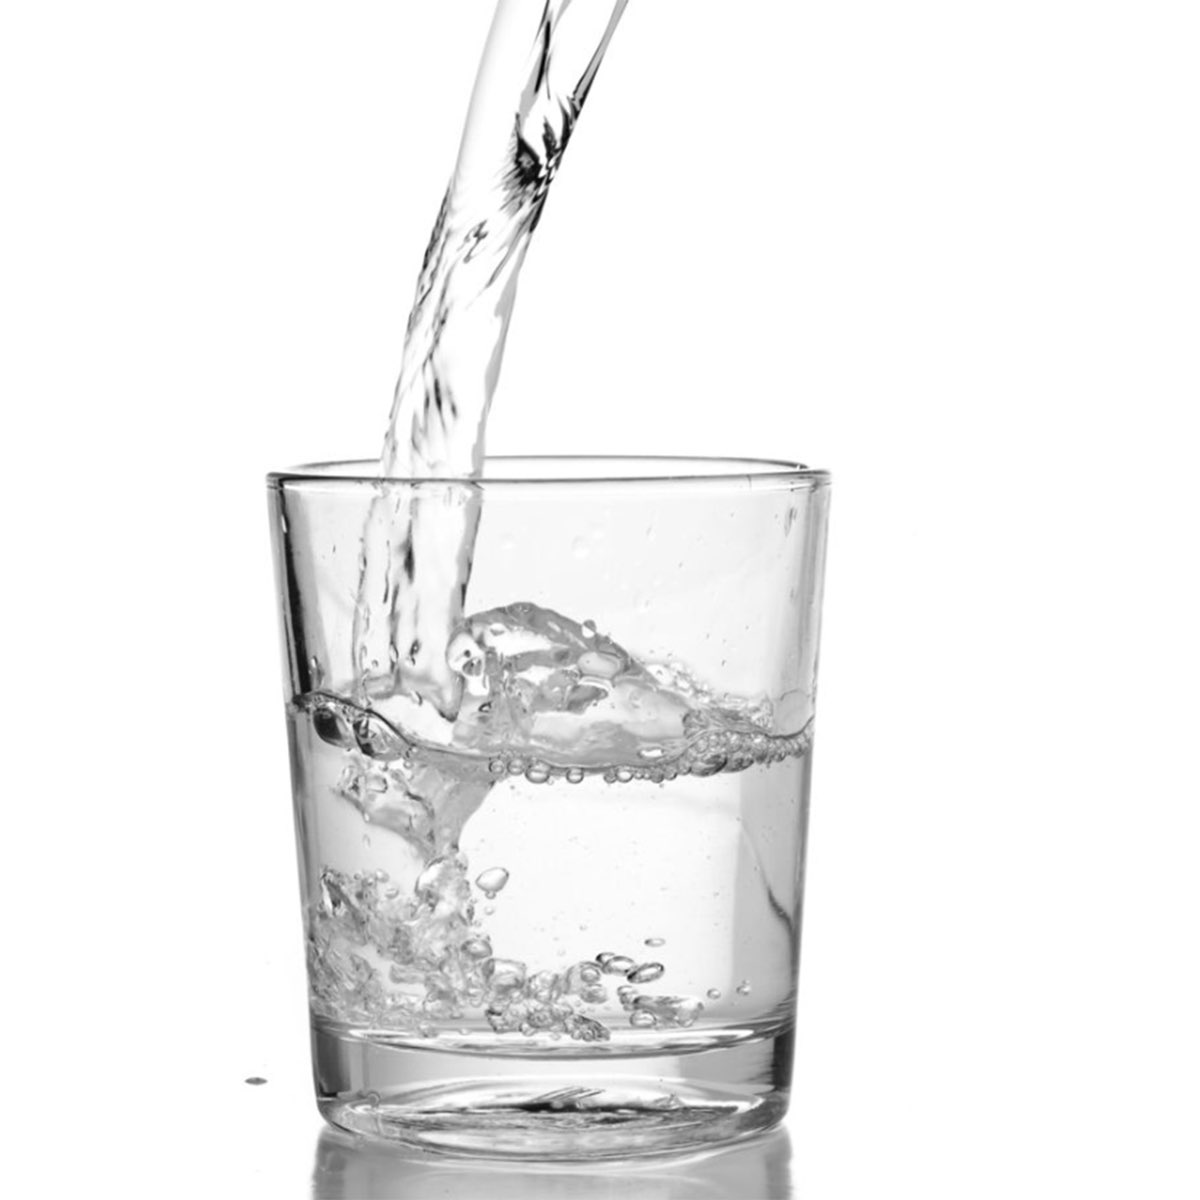 Вода всегда прозрачная. Стакан воды. Стакан воды на белом фоне. Стакан с водой не белом фоне. Прозрачная вода в стакане.